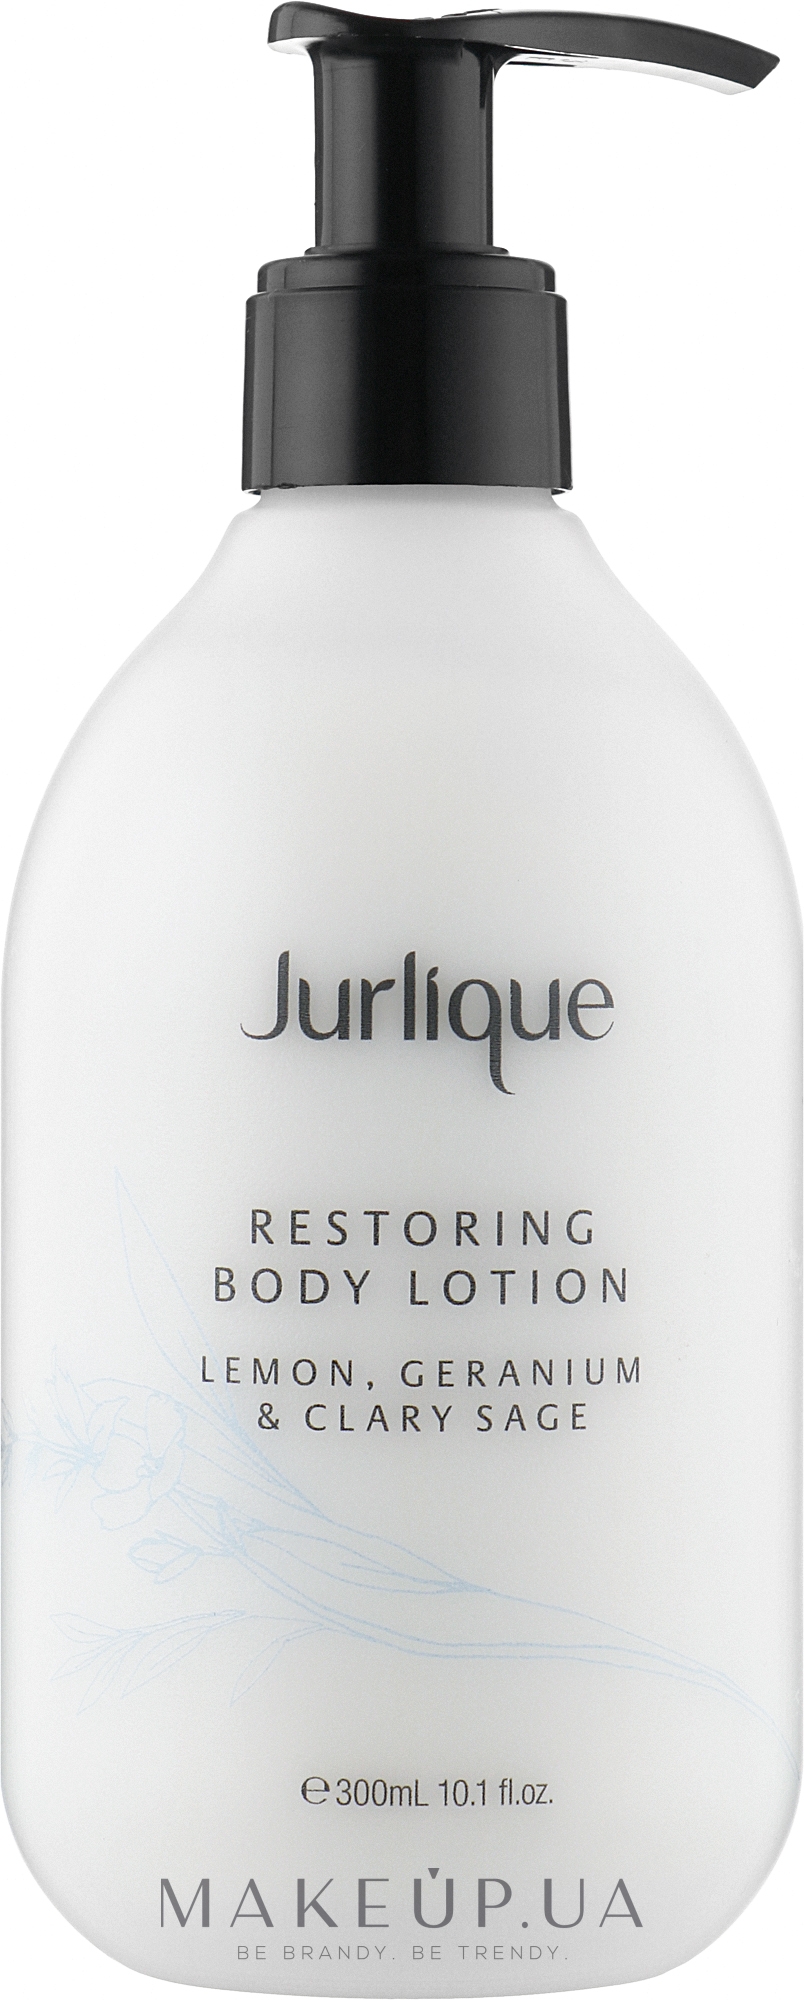 Восстанавливающий крем для тела с экстрактом лимона - Jurlique Restoring Body Lotion Lemon Geranium and Clary Sage — фото 300ml